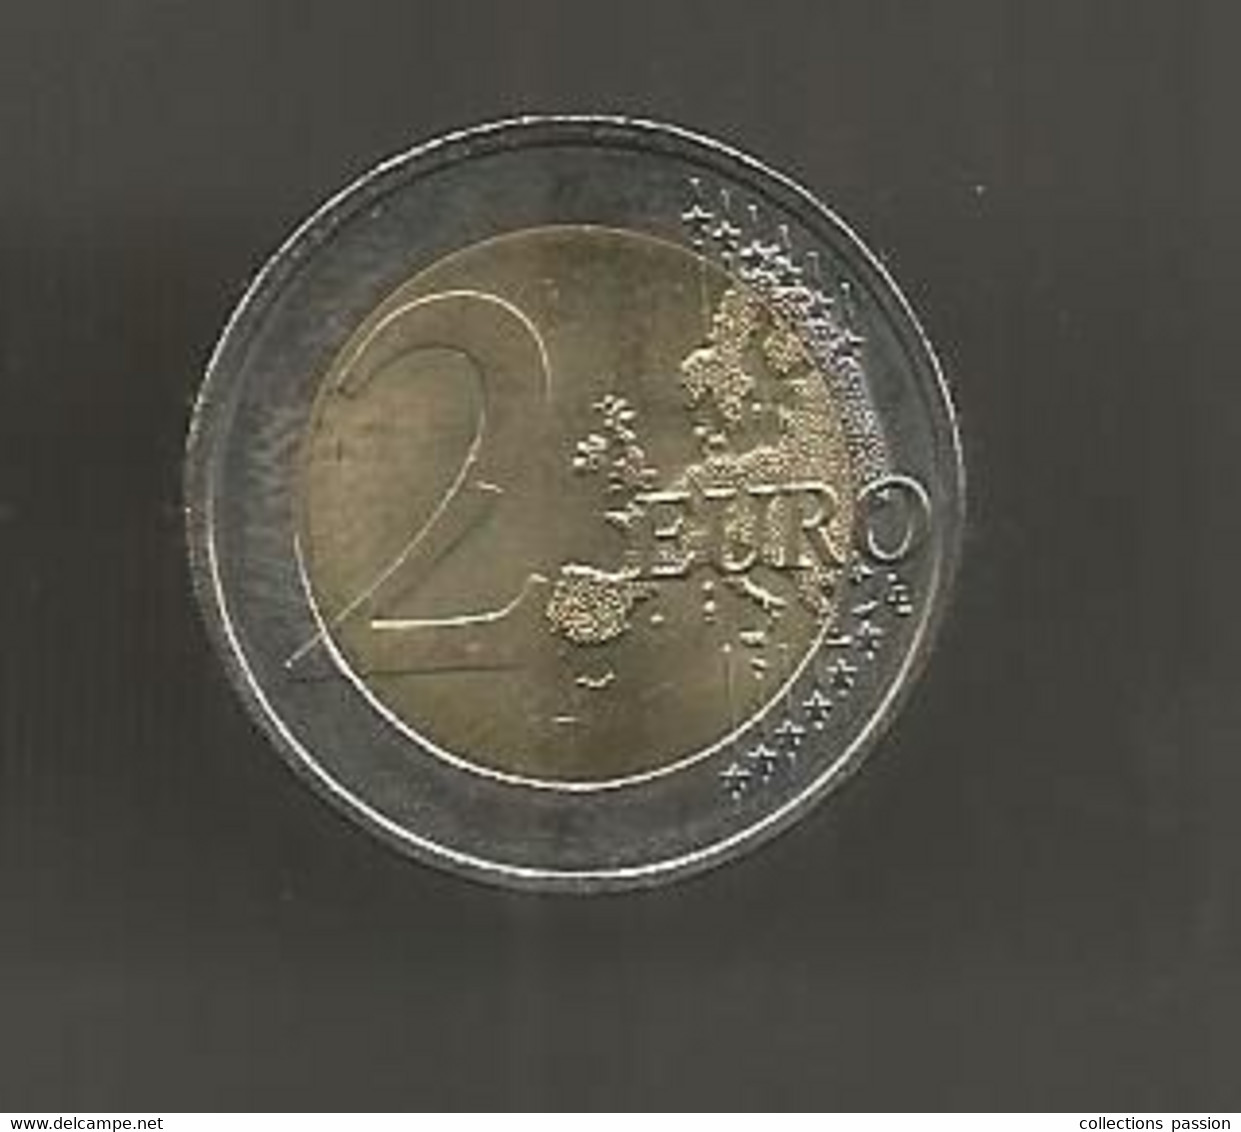 Monnaie Commémorative De 2 € , EURO , ALLEMAGNE , BUNDESREPUBLIK DEUTSCHLAND , 2002-2012 ,  2 Scans - Germany